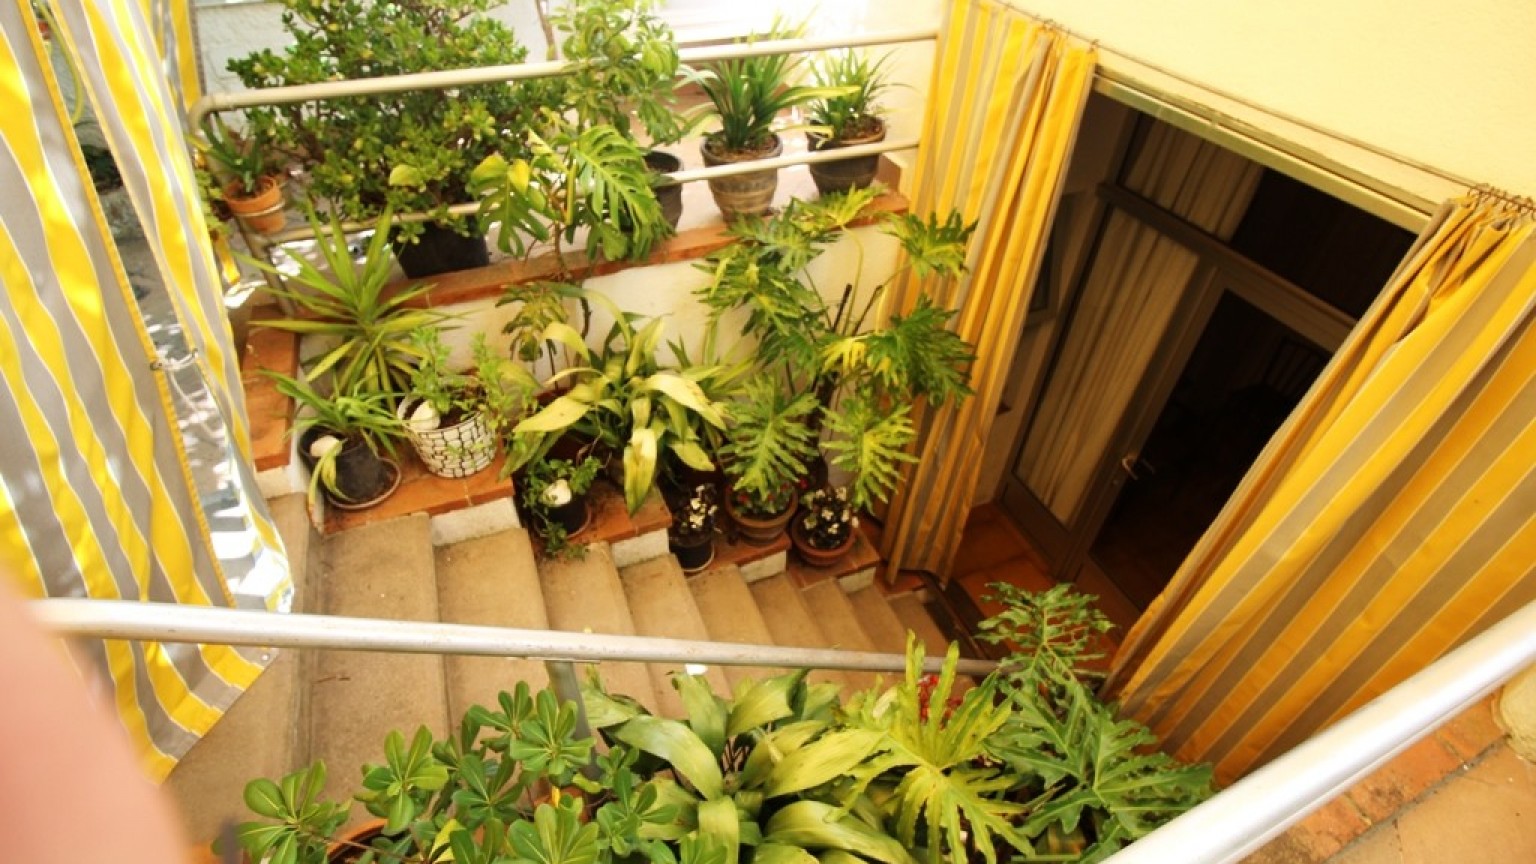 Casa en venta, en el centro ciudad con terraza y jardin privado de 60m².